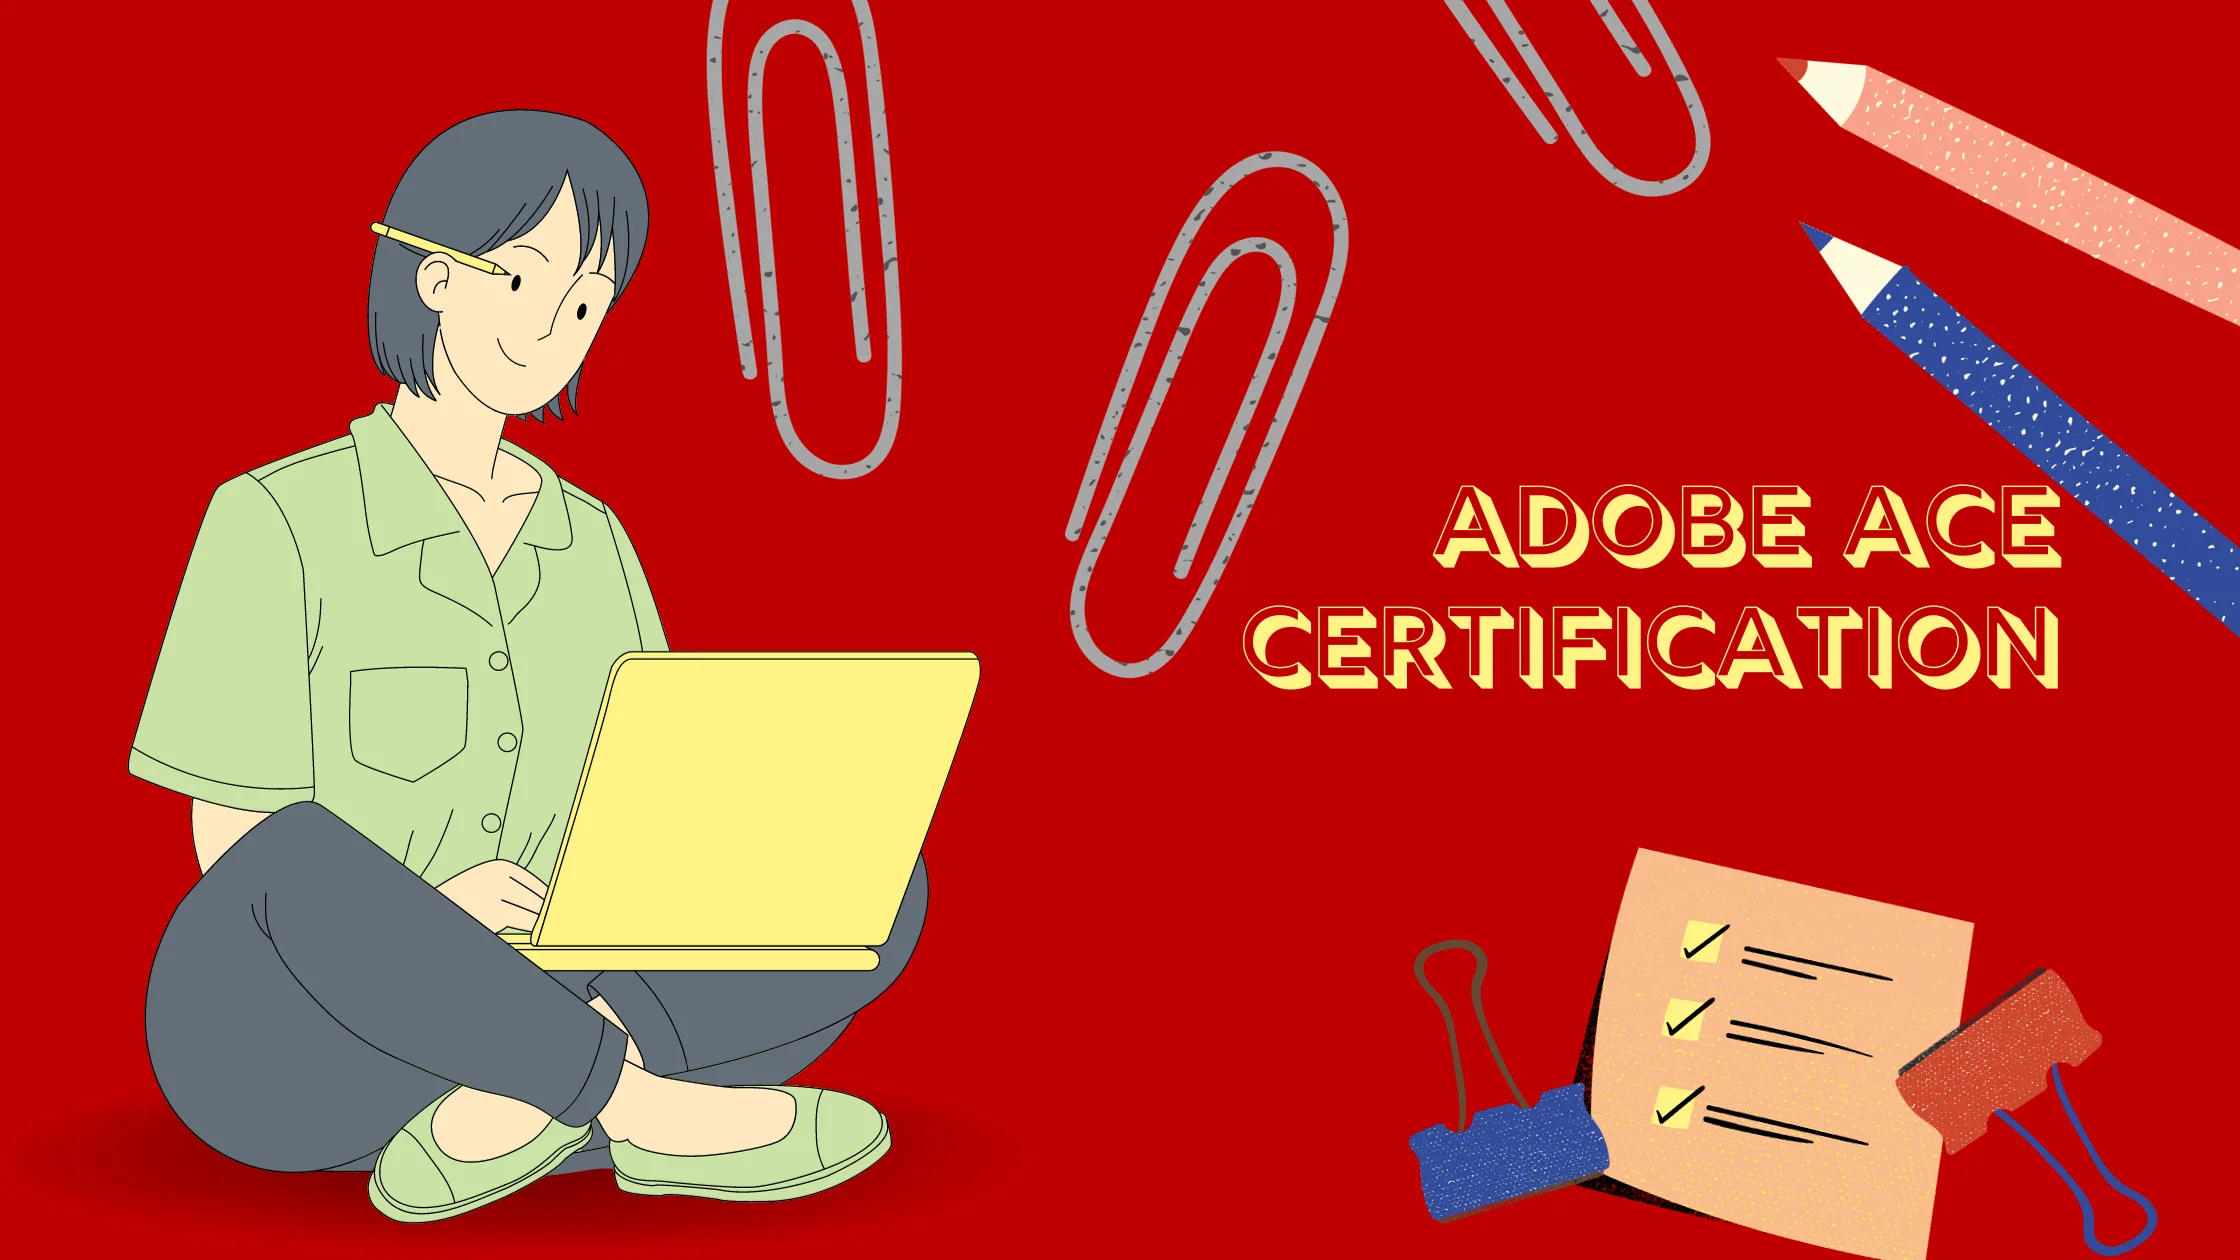 Adobe ACE Certification success